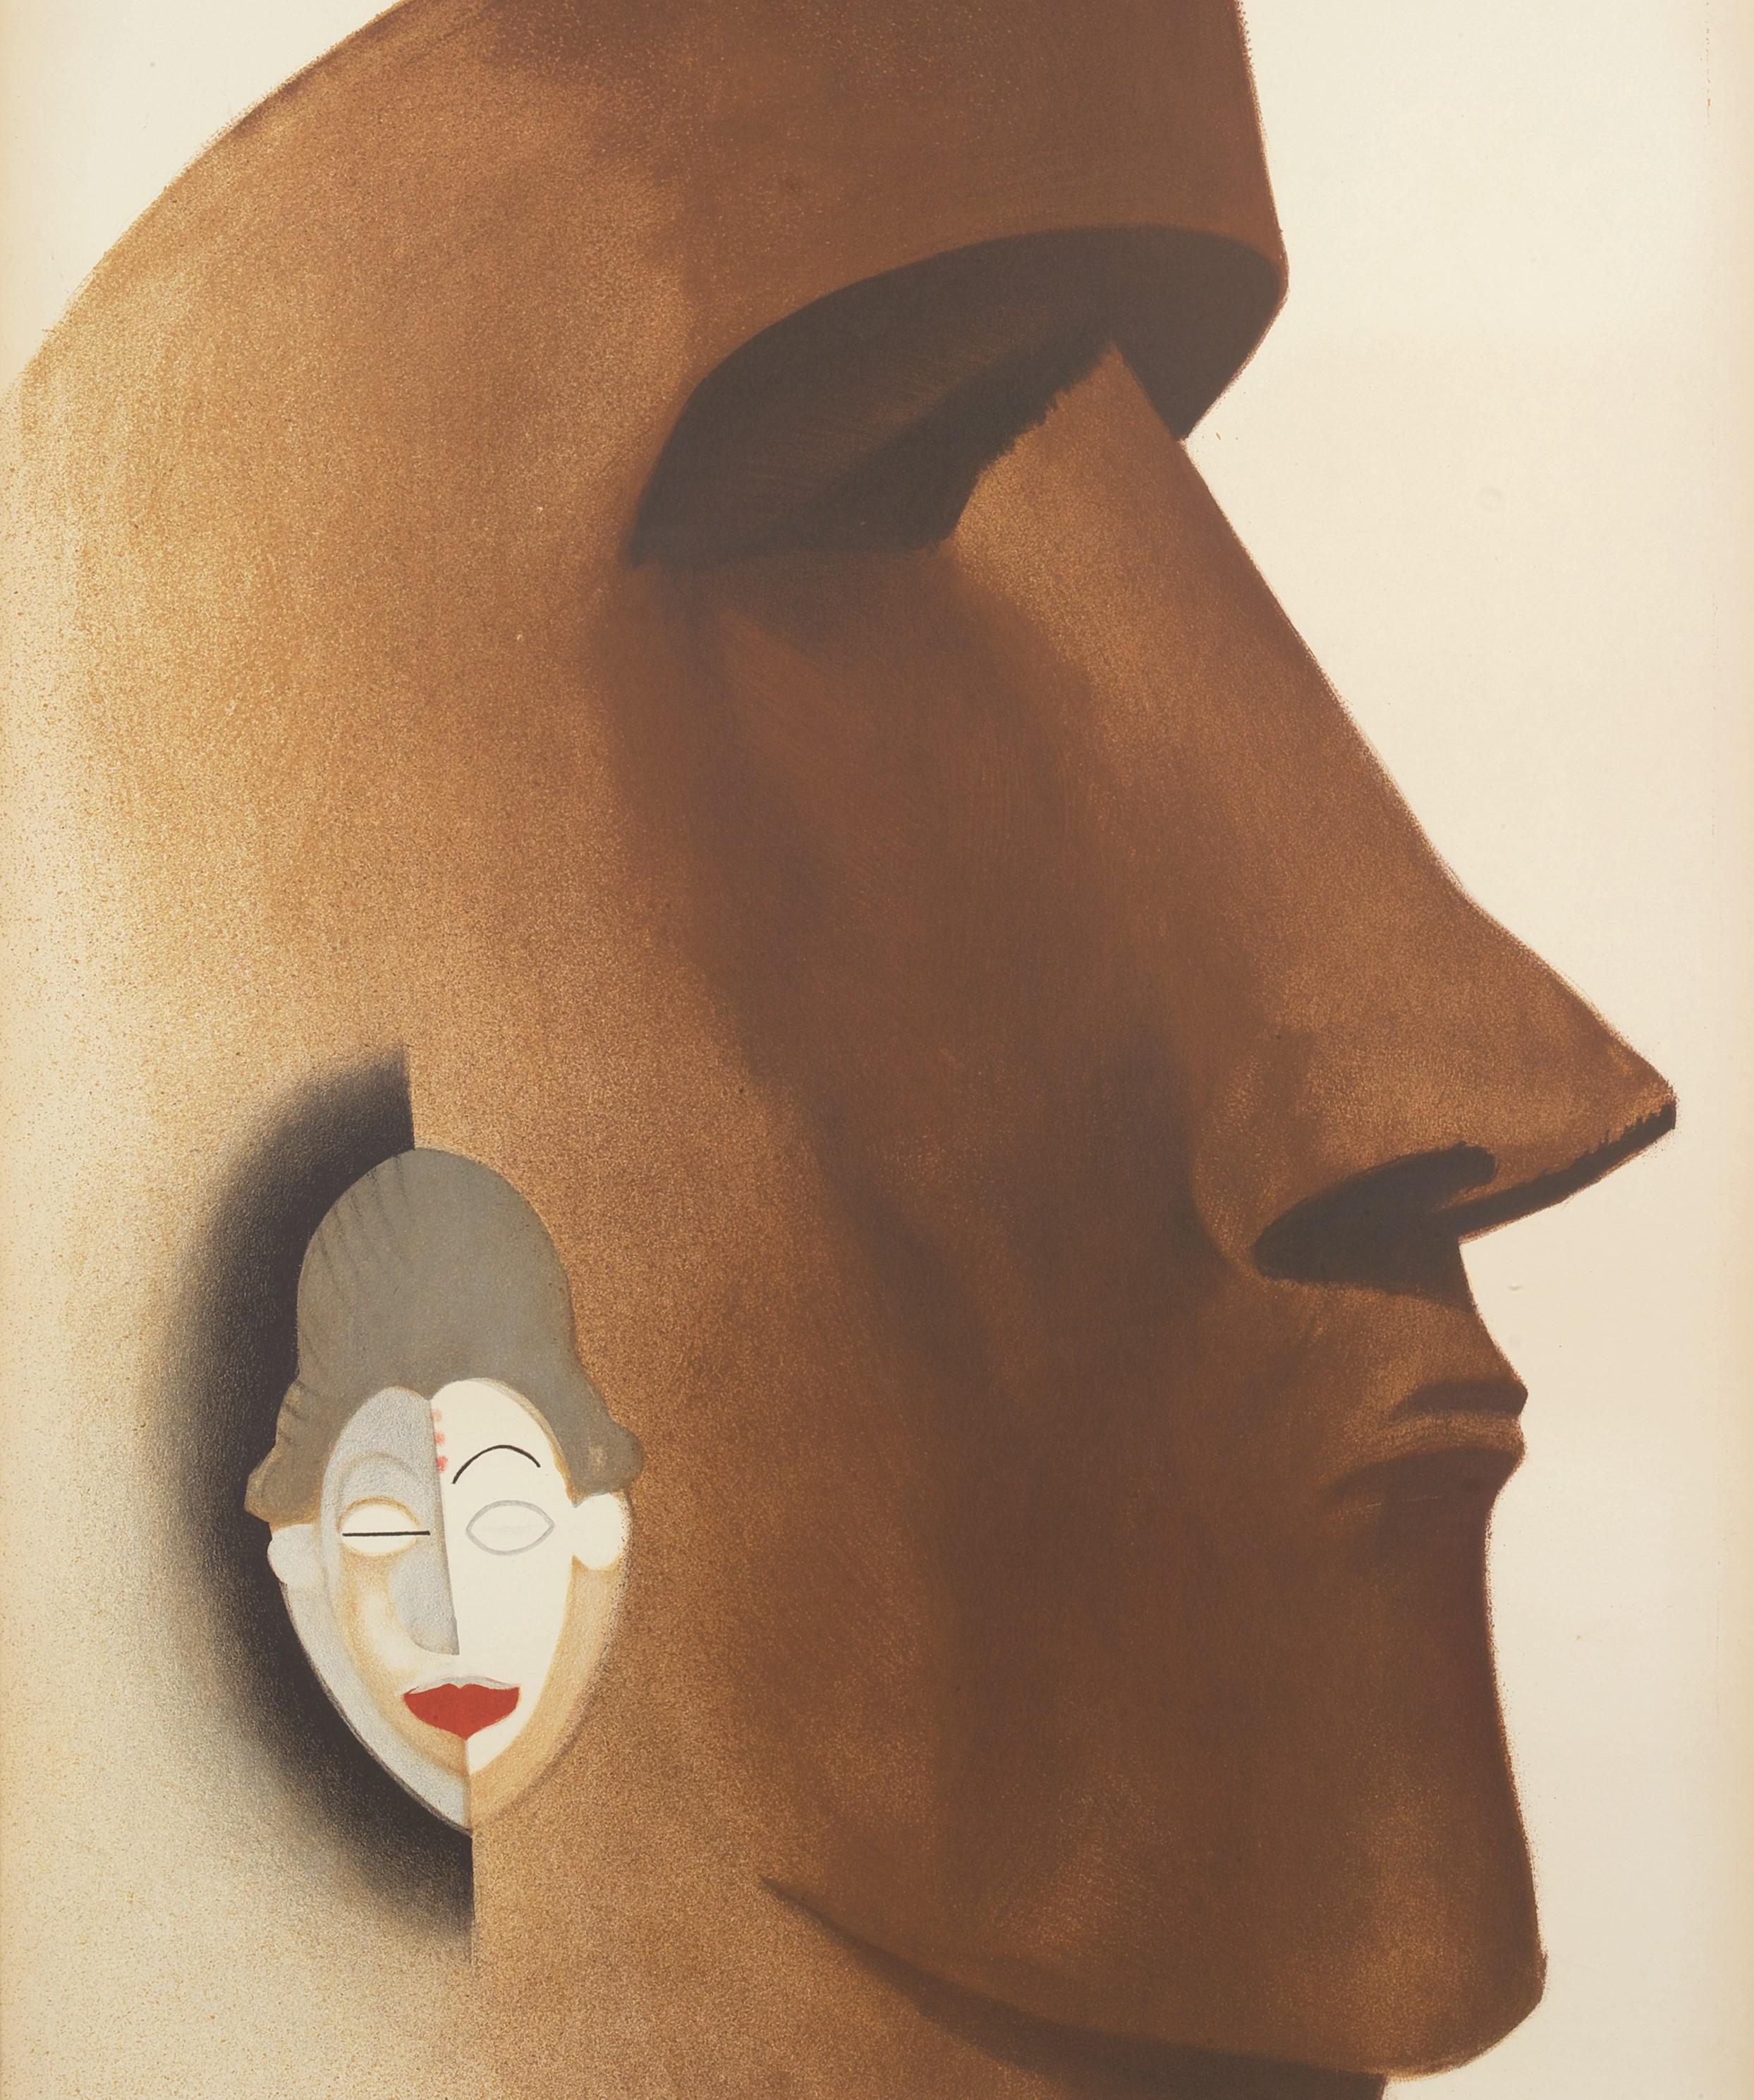 Poster Art Deco di ispirazione africana e oceanica che raffigura una maschera Punu del Gabon e una monumentale statua Moai delle Isole di Pasqua.

Paul Colin (27 giugno 1892 - 18 giugno 1985) nato a Nancy, Francia, morto a Nogent-sur-Marne.

Paul